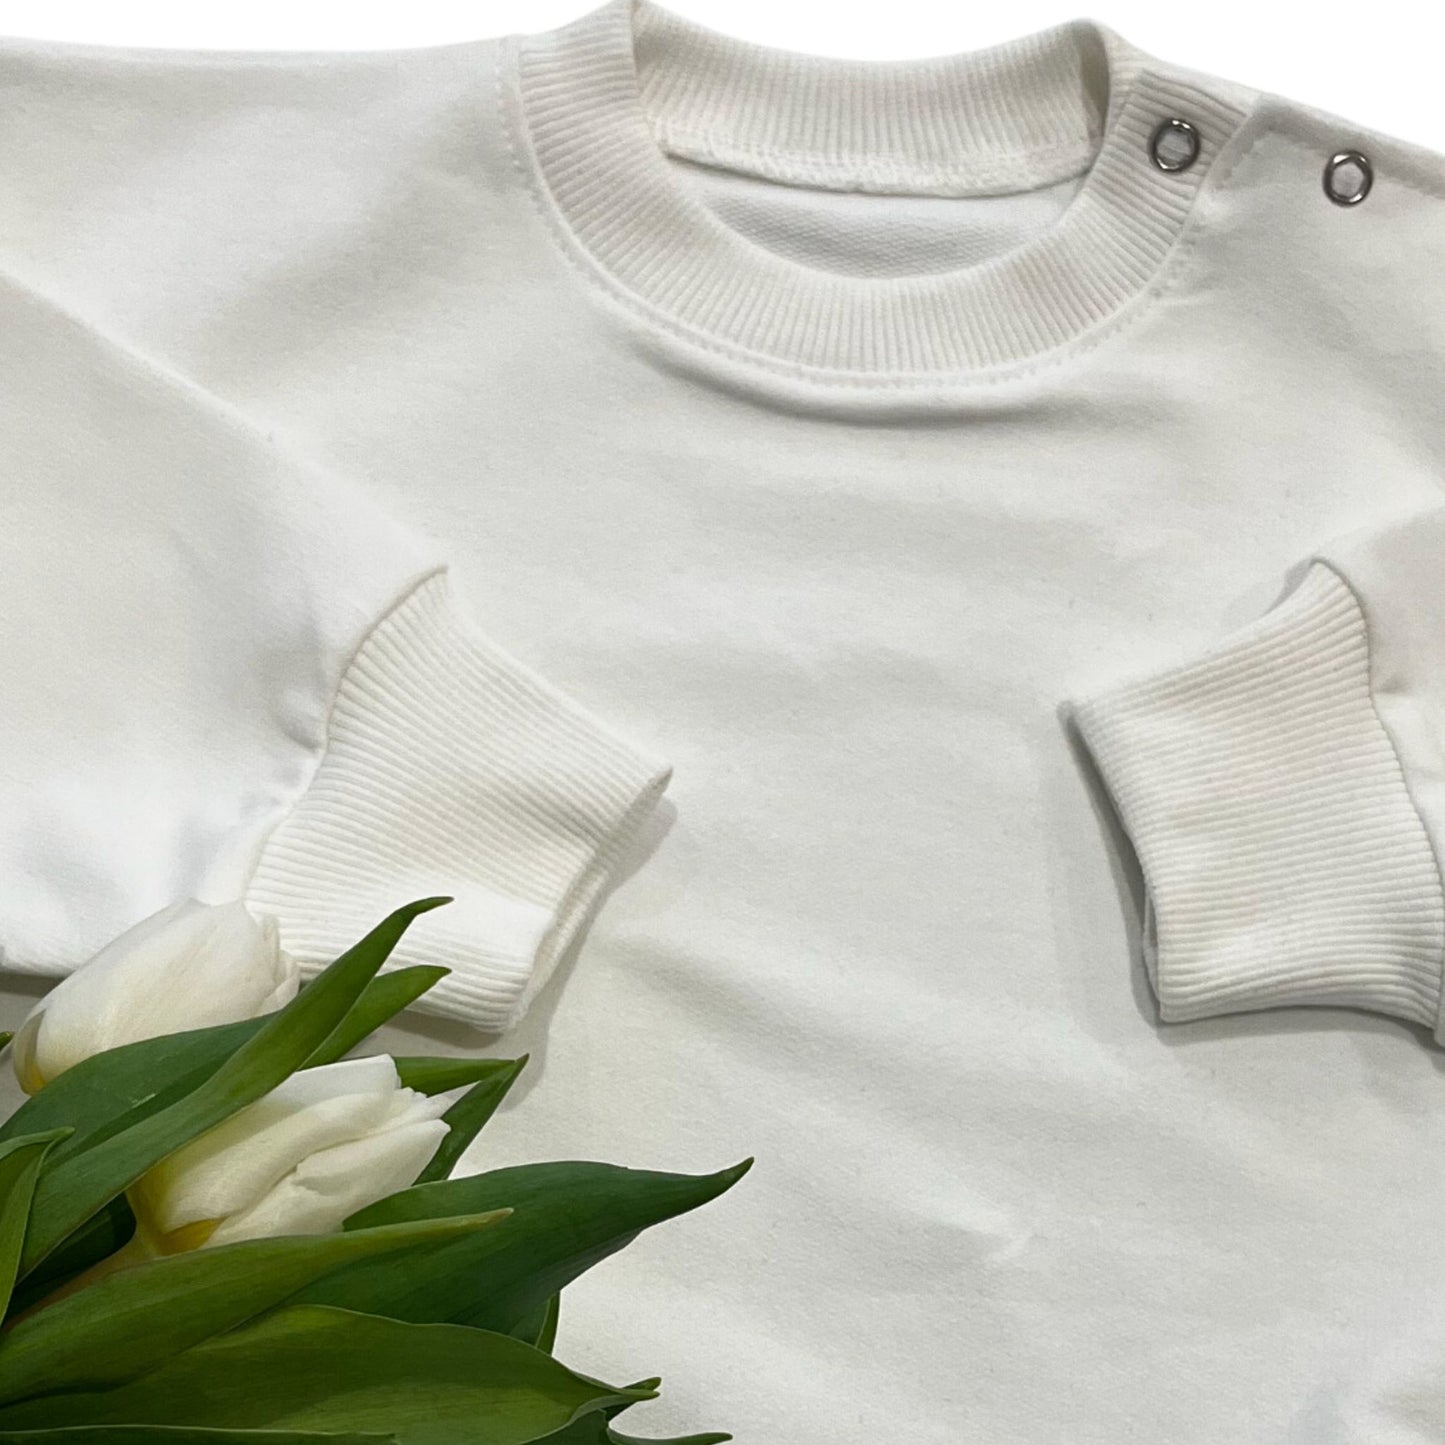 Unisex T-Shirt für Mädchen und Jungen. Premium-Qualität aus reiner Bio Baumwolle in Weiss